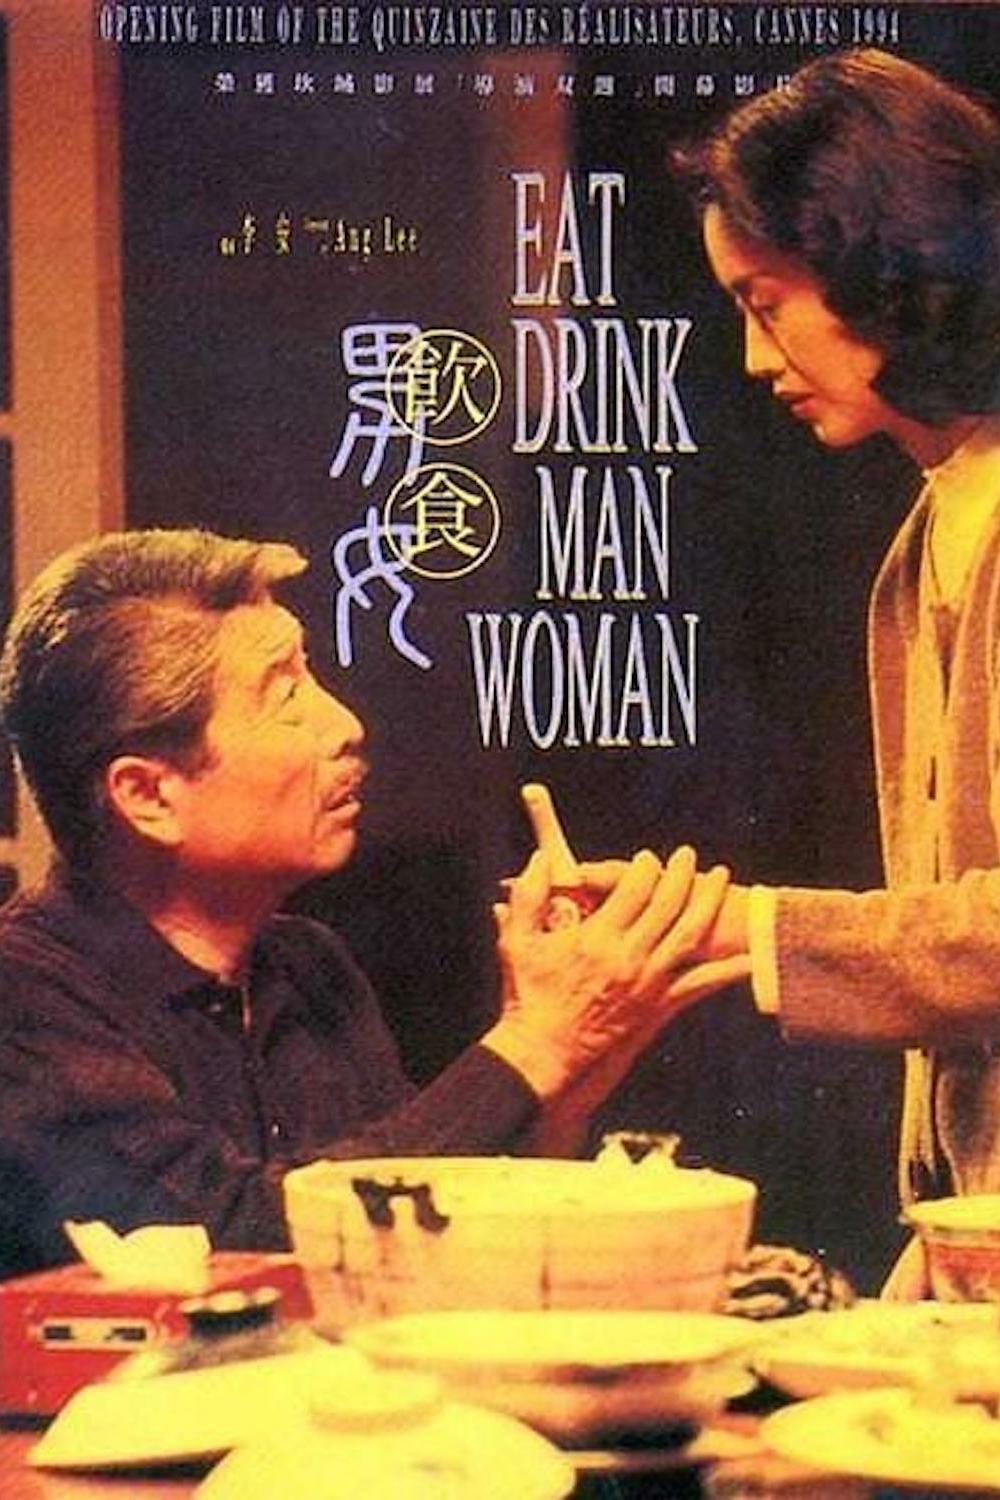 饮食男女 蓝光原盘下载+高清MKV版/Eat Drink Man Woman 1994 飲食男女 21.2G